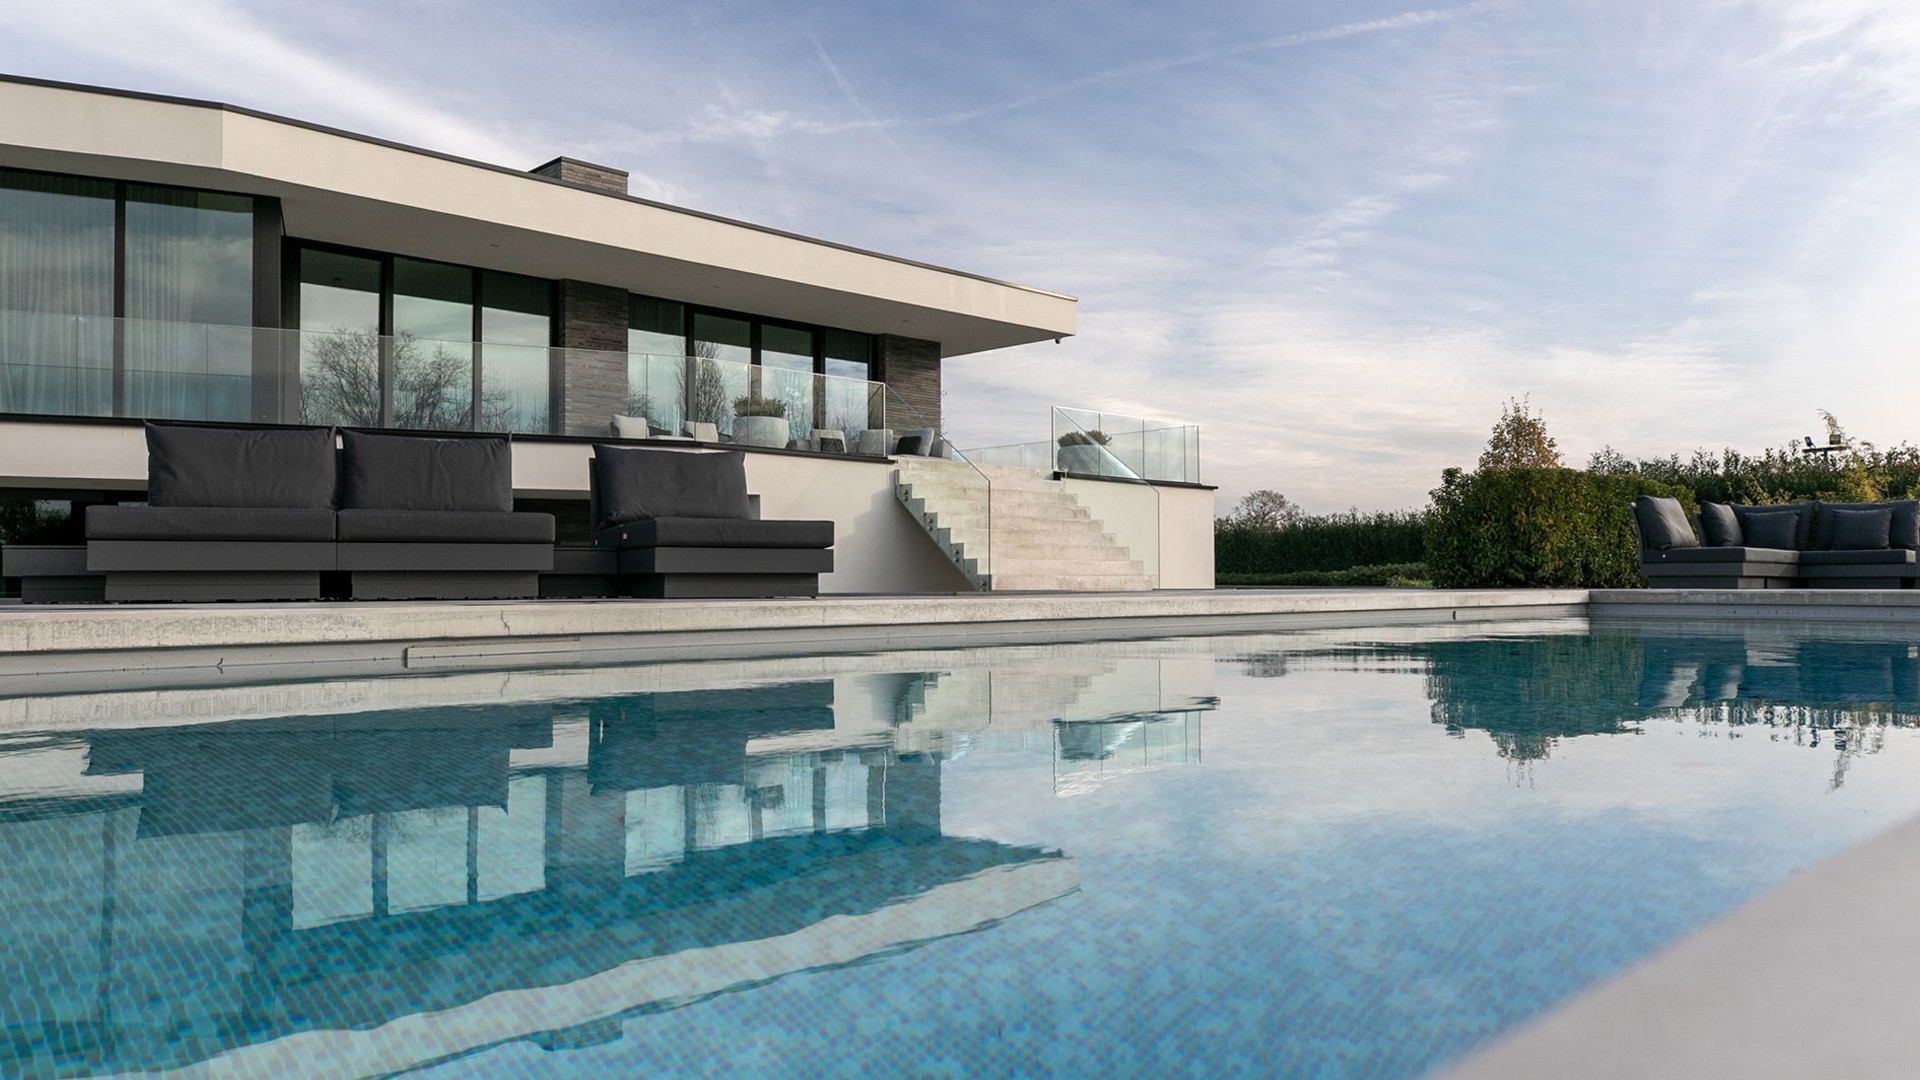 Gio Latooy koopt deze waanzinnig luxe miljoenen villa met verwarmd buitenzwembad. Zie foto's 3